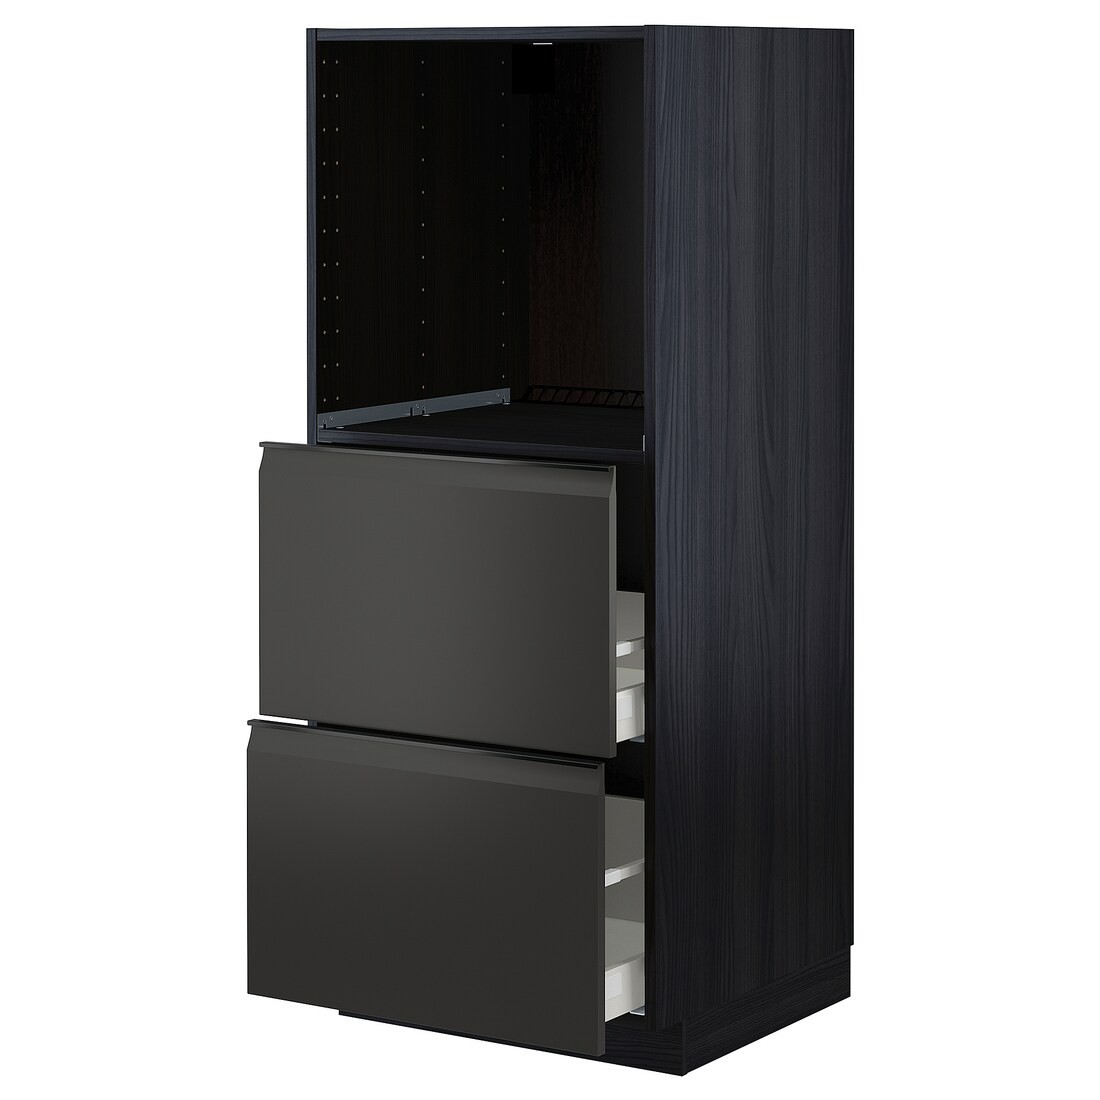 METOD МЕТОД / MAXIMERA МАКСИМЕРА Высокий шкаф с 2 ящиками для духовки, черный / Upplöv матовый антрацит, 60x60x140 см